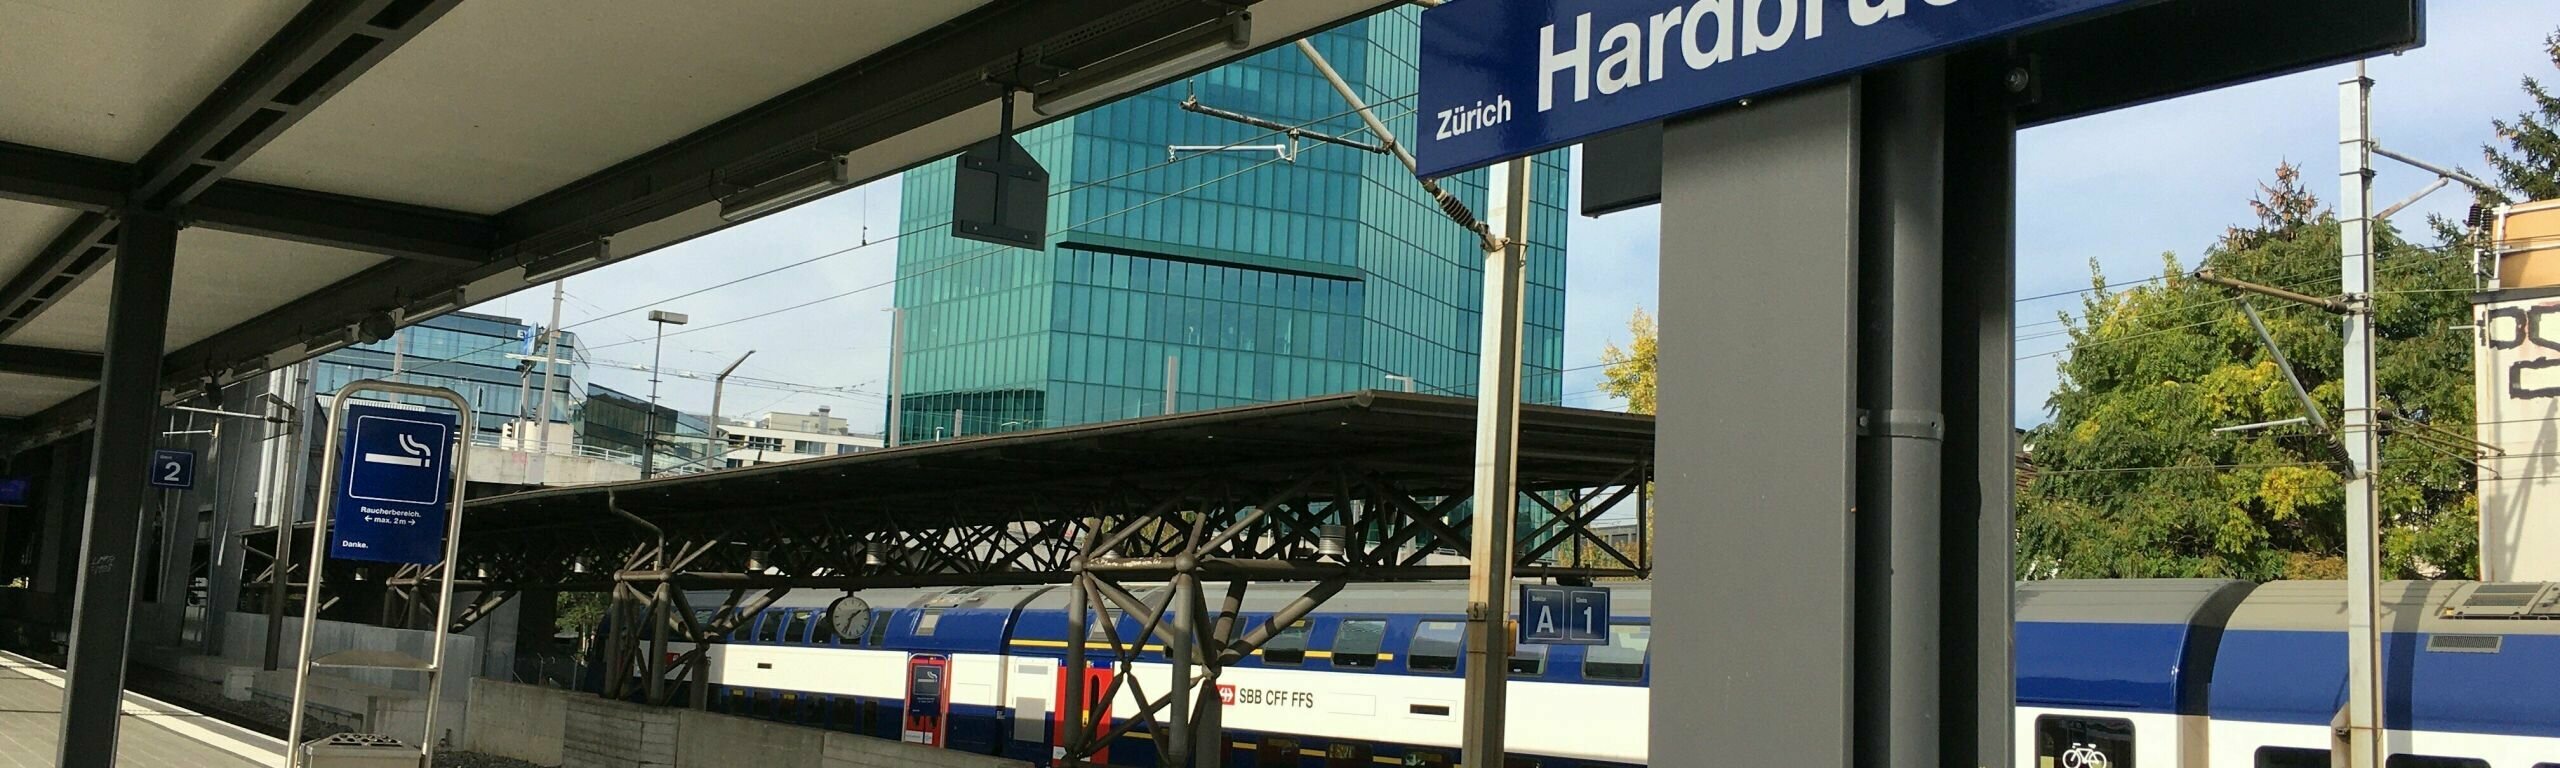 Zürich Hardbrücke Bahnhof